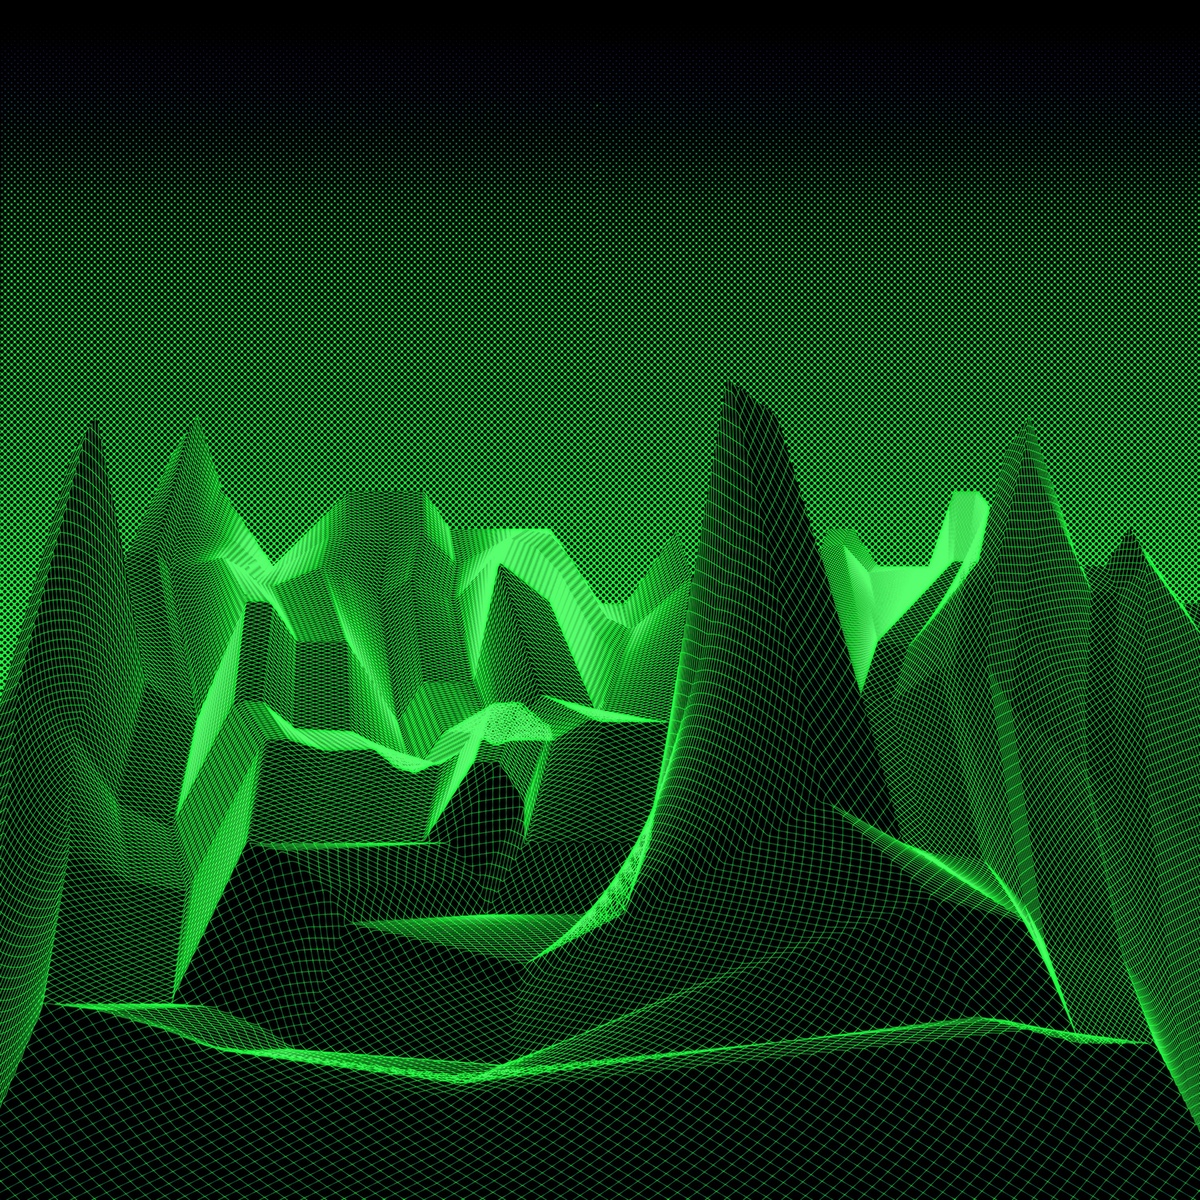 Adobe Portfolio experimental grid Warp weird 3D